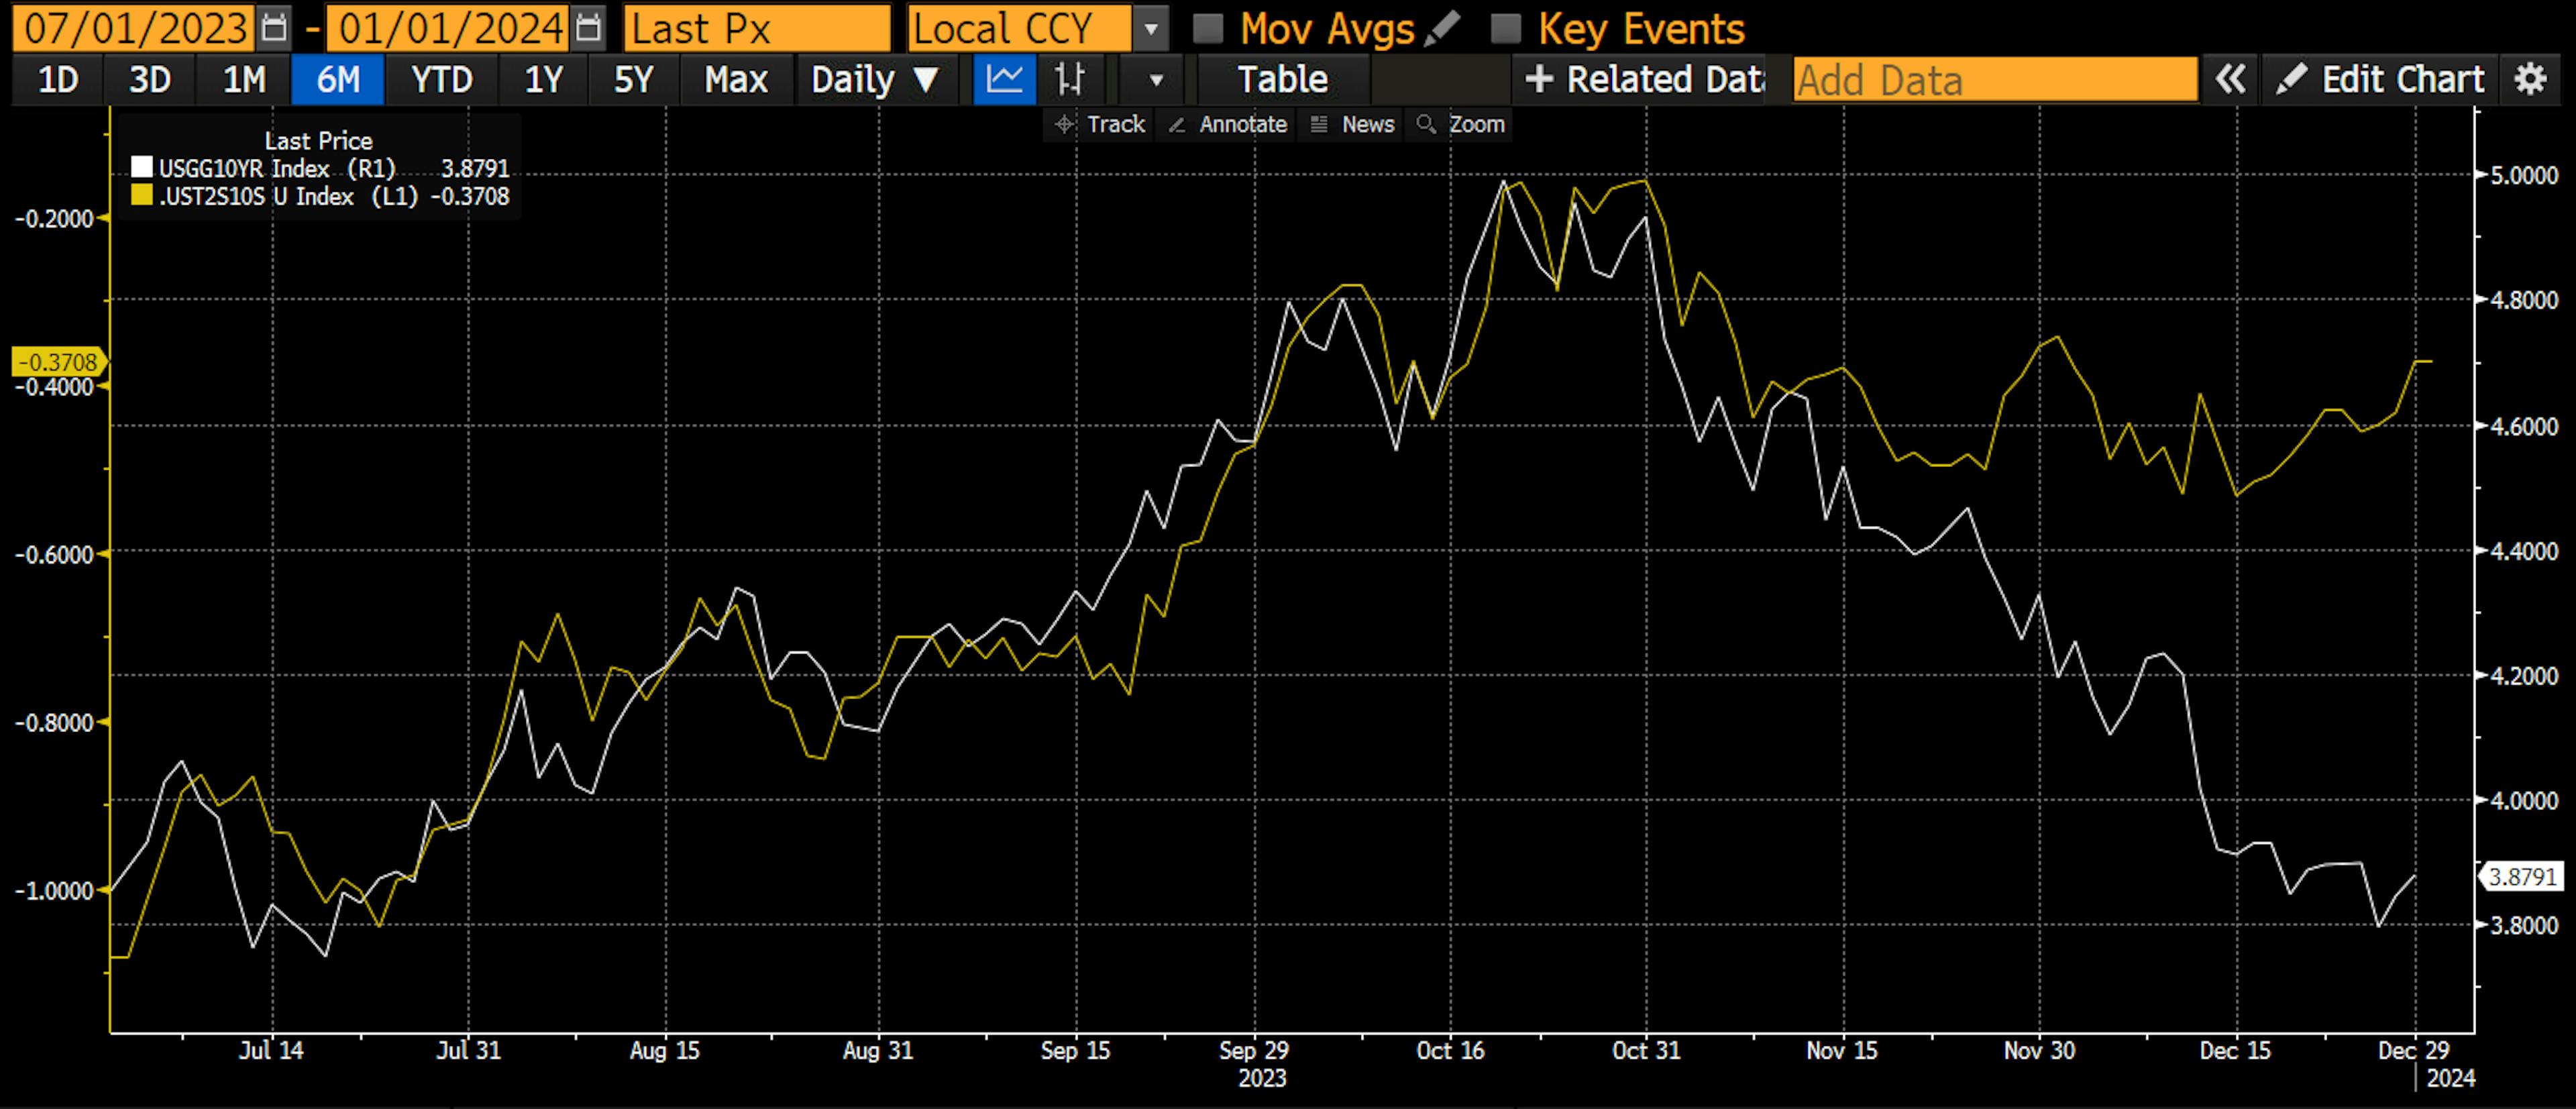 Die weiße Linie ist die 10-jährige Staatsanleihe und die gelbe Linie ist die Differenz zwischen der Rendite 10-jähriger und 2-jähriger Staatsanleihen. Wie Sie sehen können, erreichten die Renditen Ende Oktober ihren Höhepunkt in einer Bärenform, was bedeutet, dass die weiße und die gelbe Linie gleichzeitig anstiegen. Anfang November kam es zu einem heftigen Short-Squeeze bei Anleihen, und die Renditen stürzten ab.